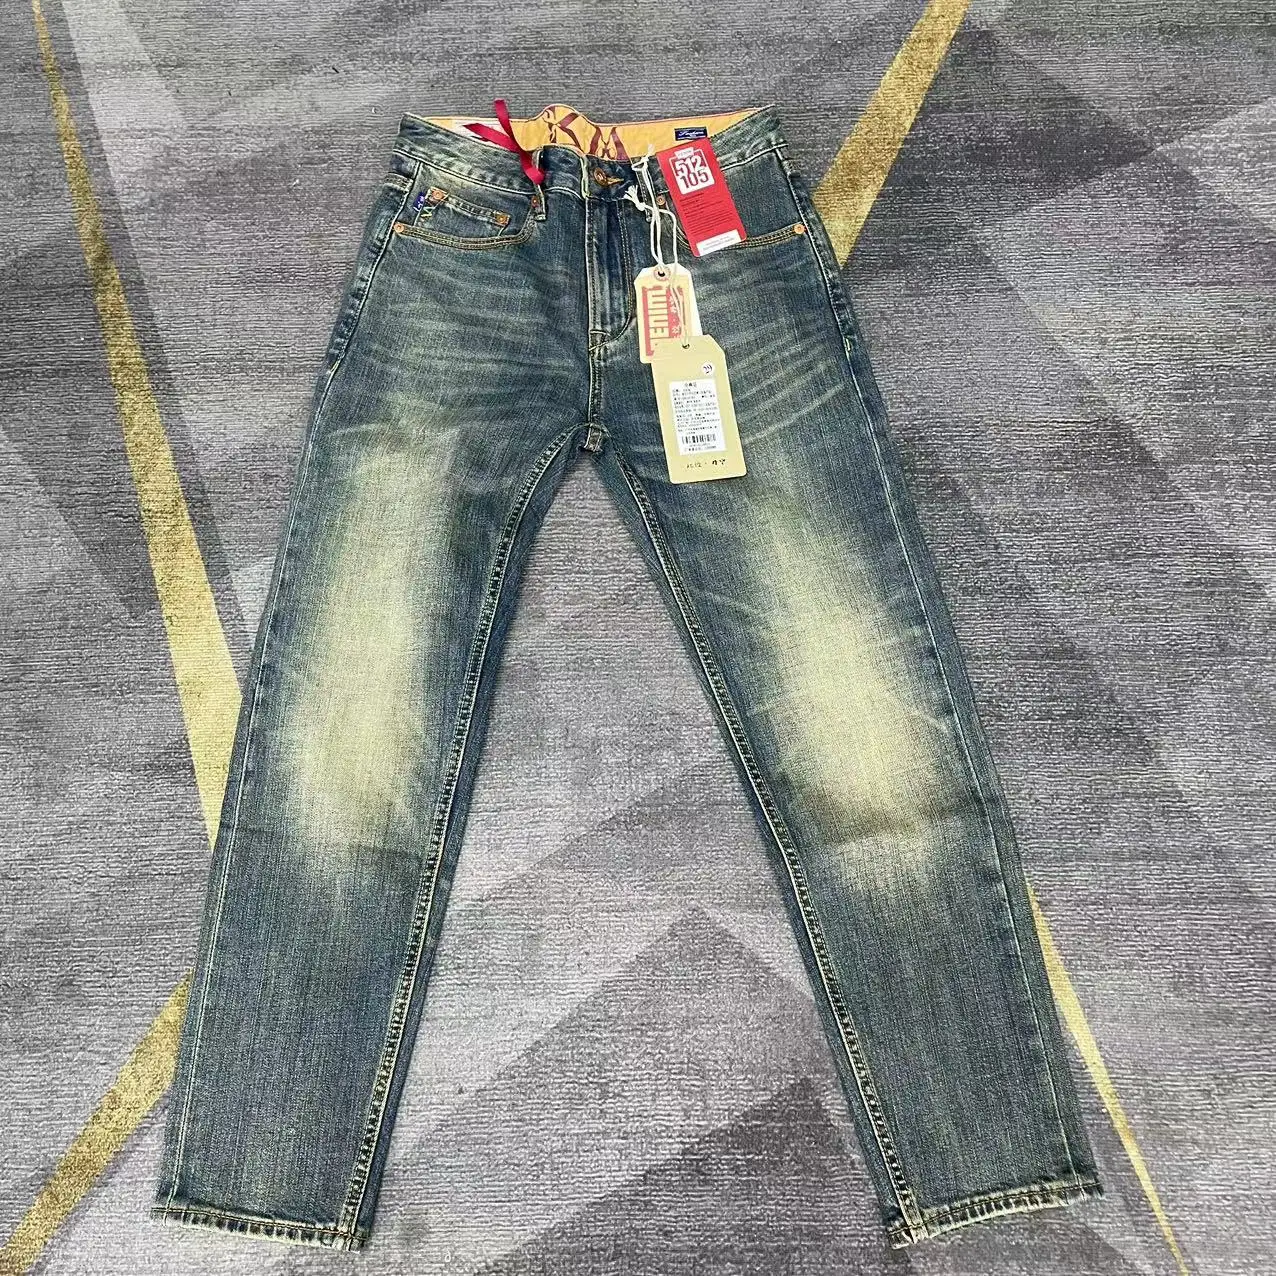 

Джинсы Cityboy мужские стрейчевые, винтажные зауженные прямые брюки из 99% хлопка, с потертостями, весна-лето